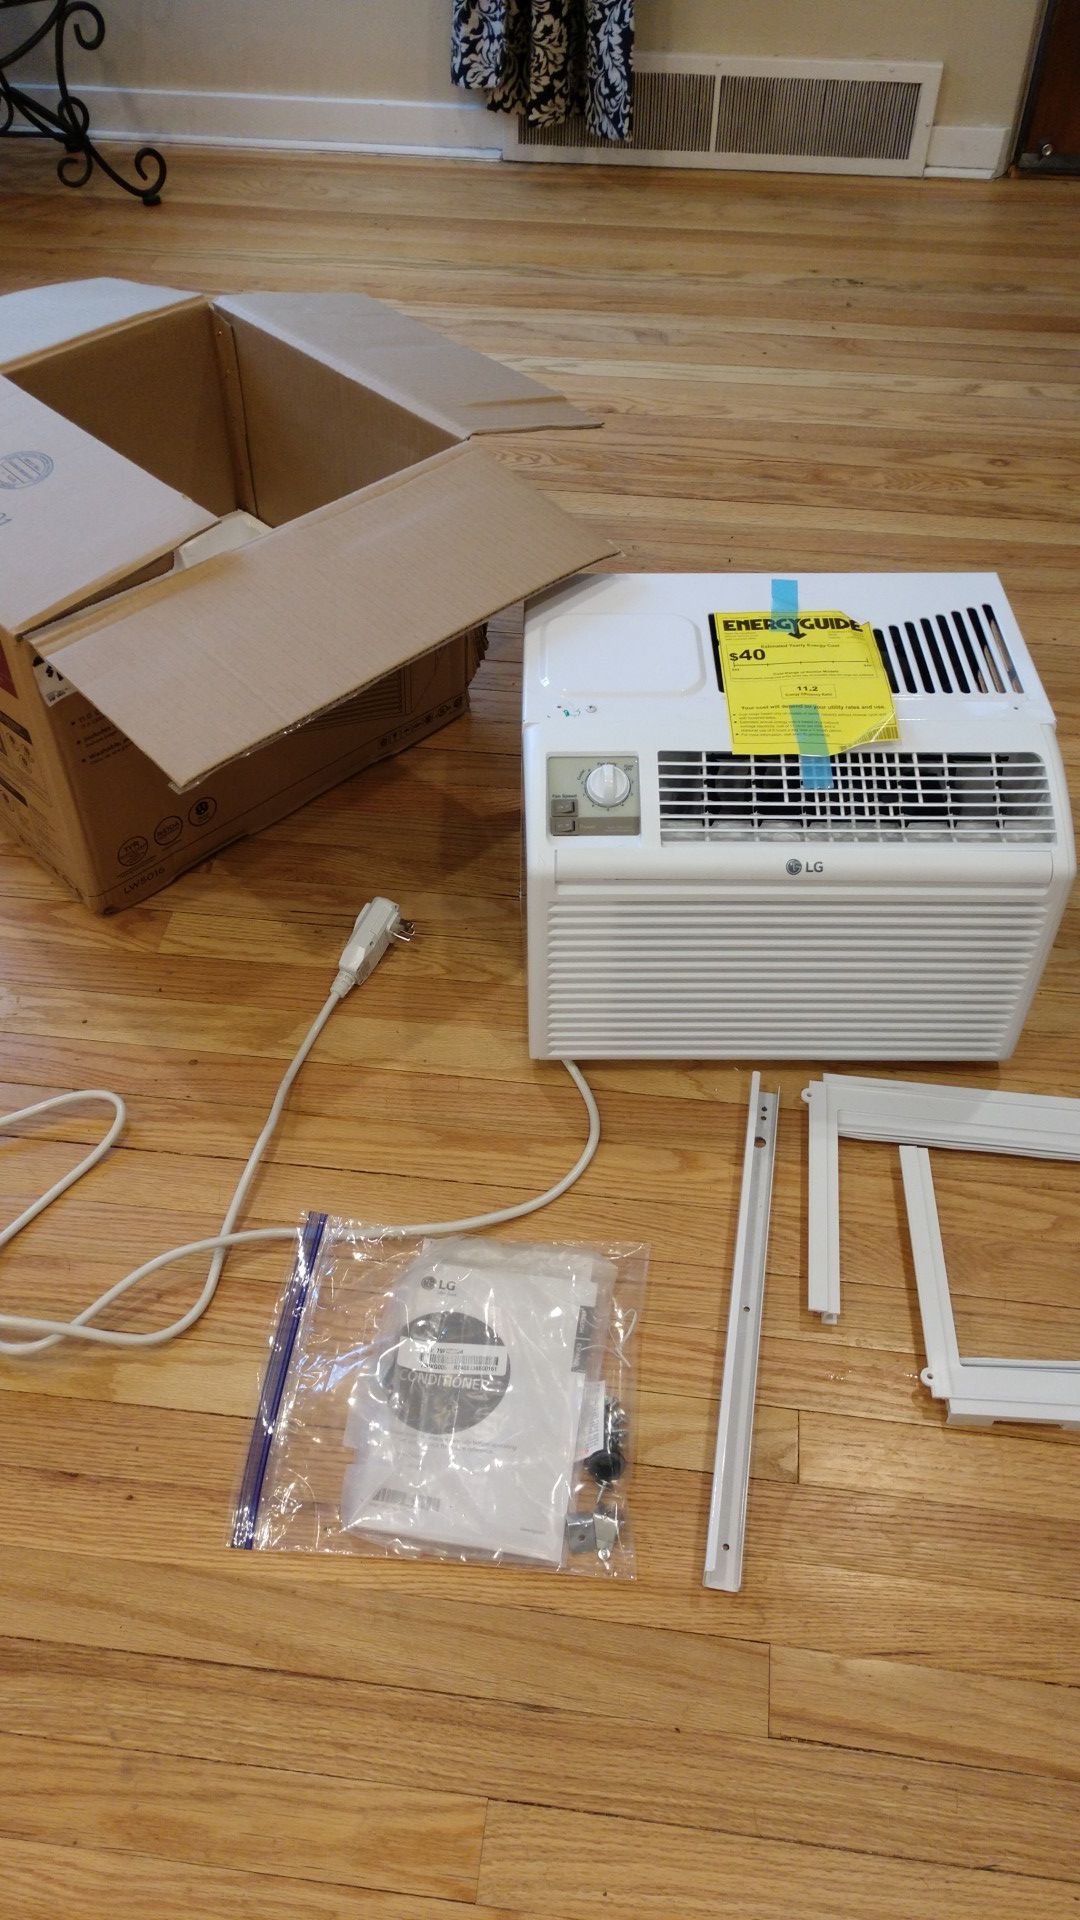 LG 5,000 BTU room air conditioner